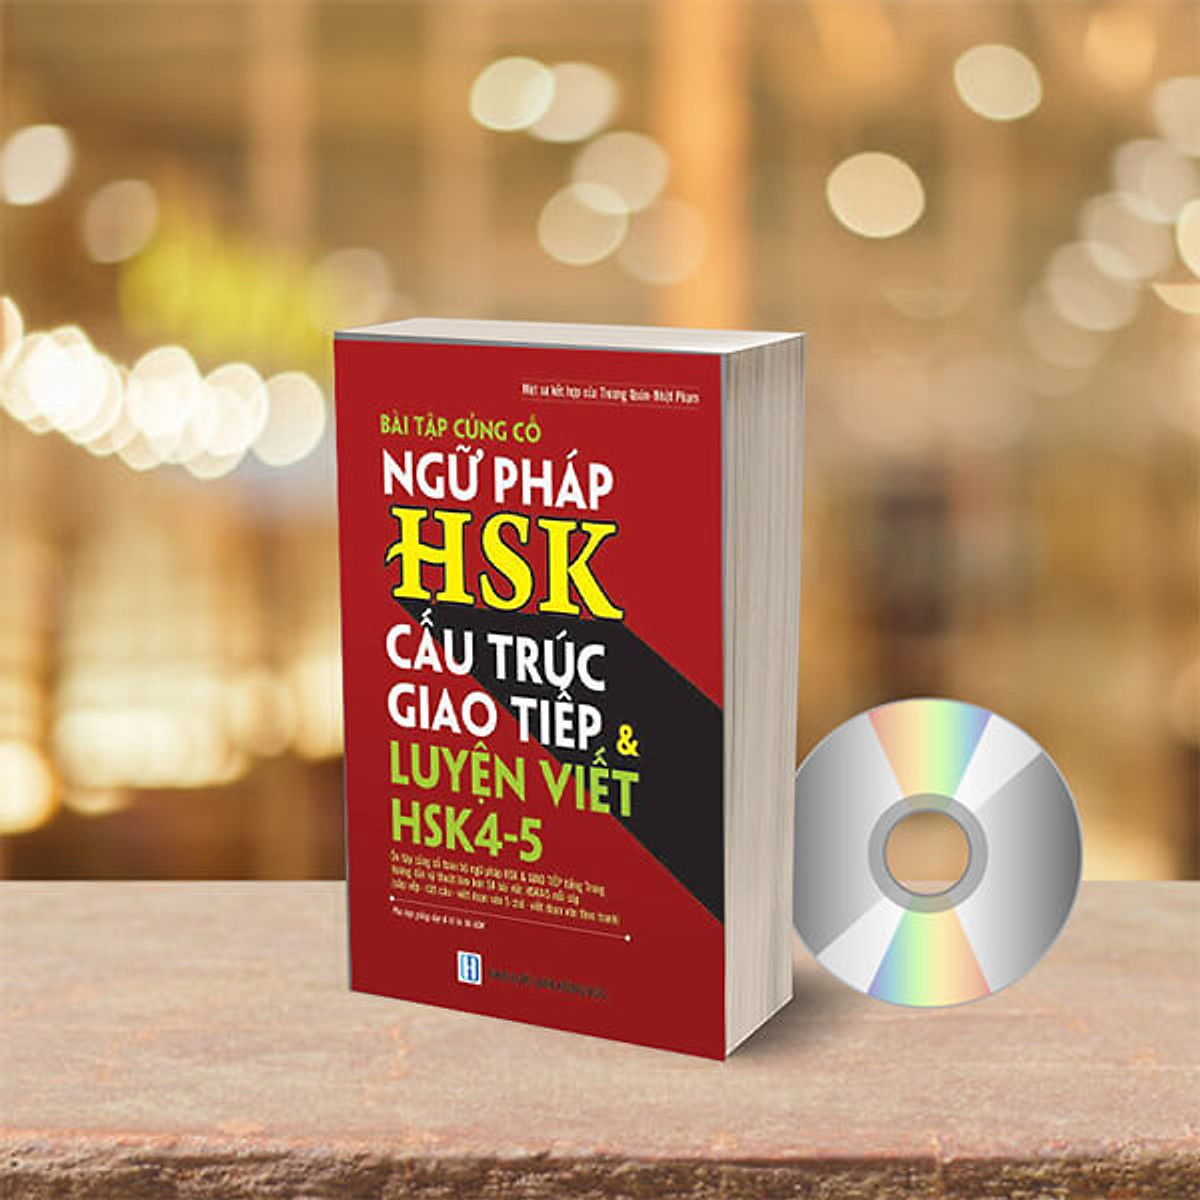 Bài tập củng cố ngữ pháp HSK cấu trúc giao tiếp & luyện viết HSK4-5 (Sách song ngữ Trung Việt có phiên âm) + DVD quà tặng